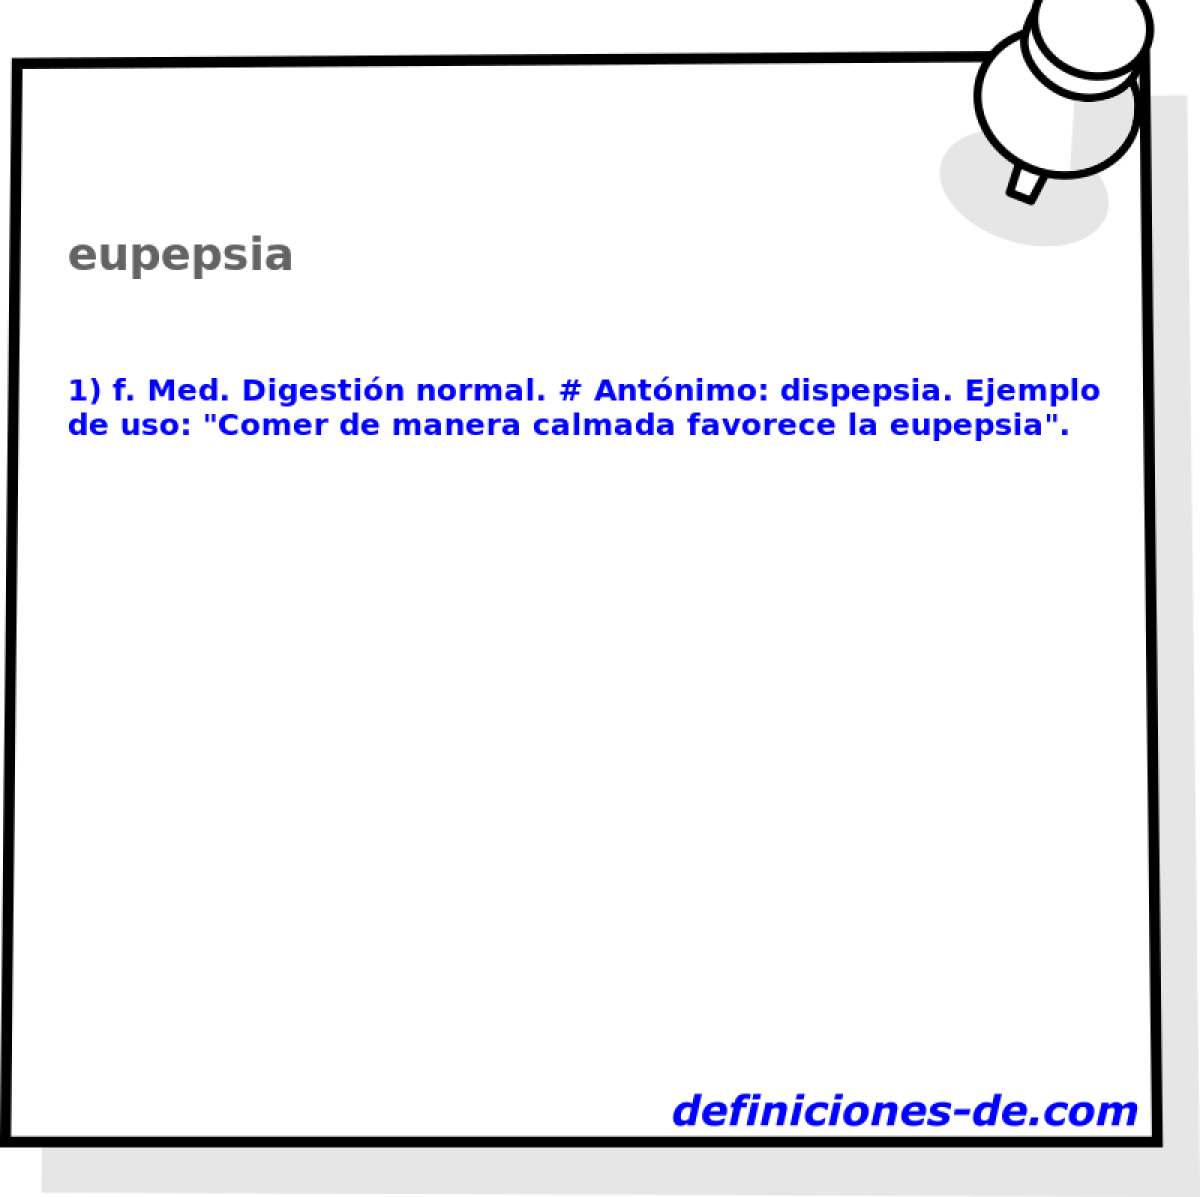 eupepsia 